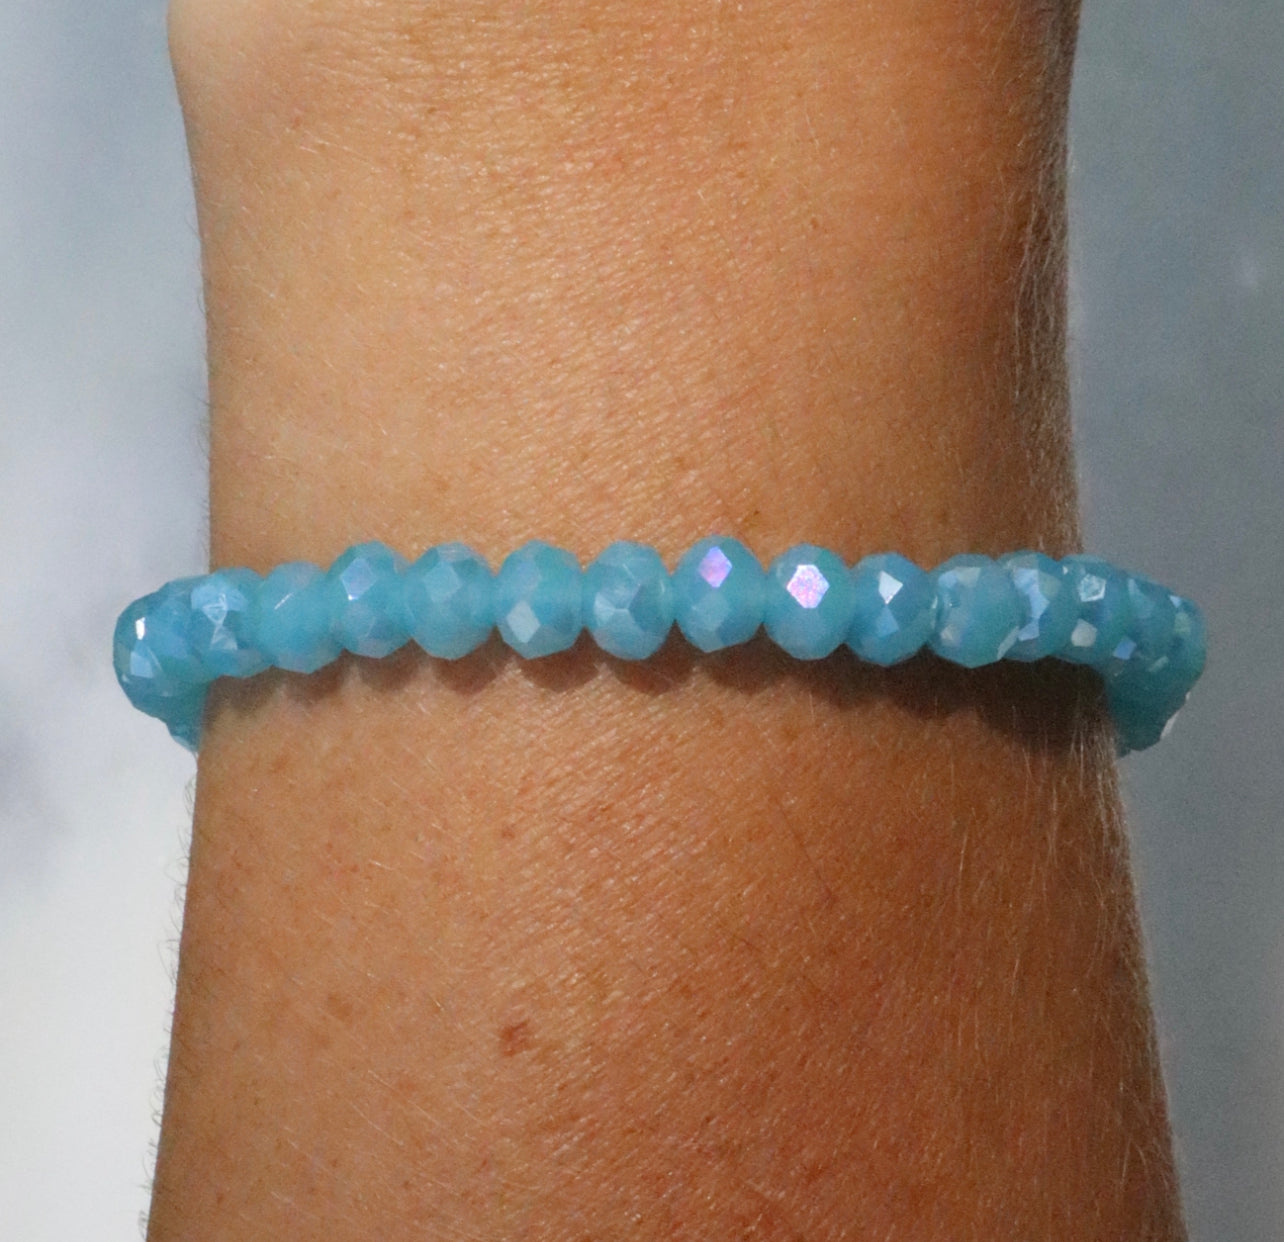 Blue Czech Crystal Bracelet